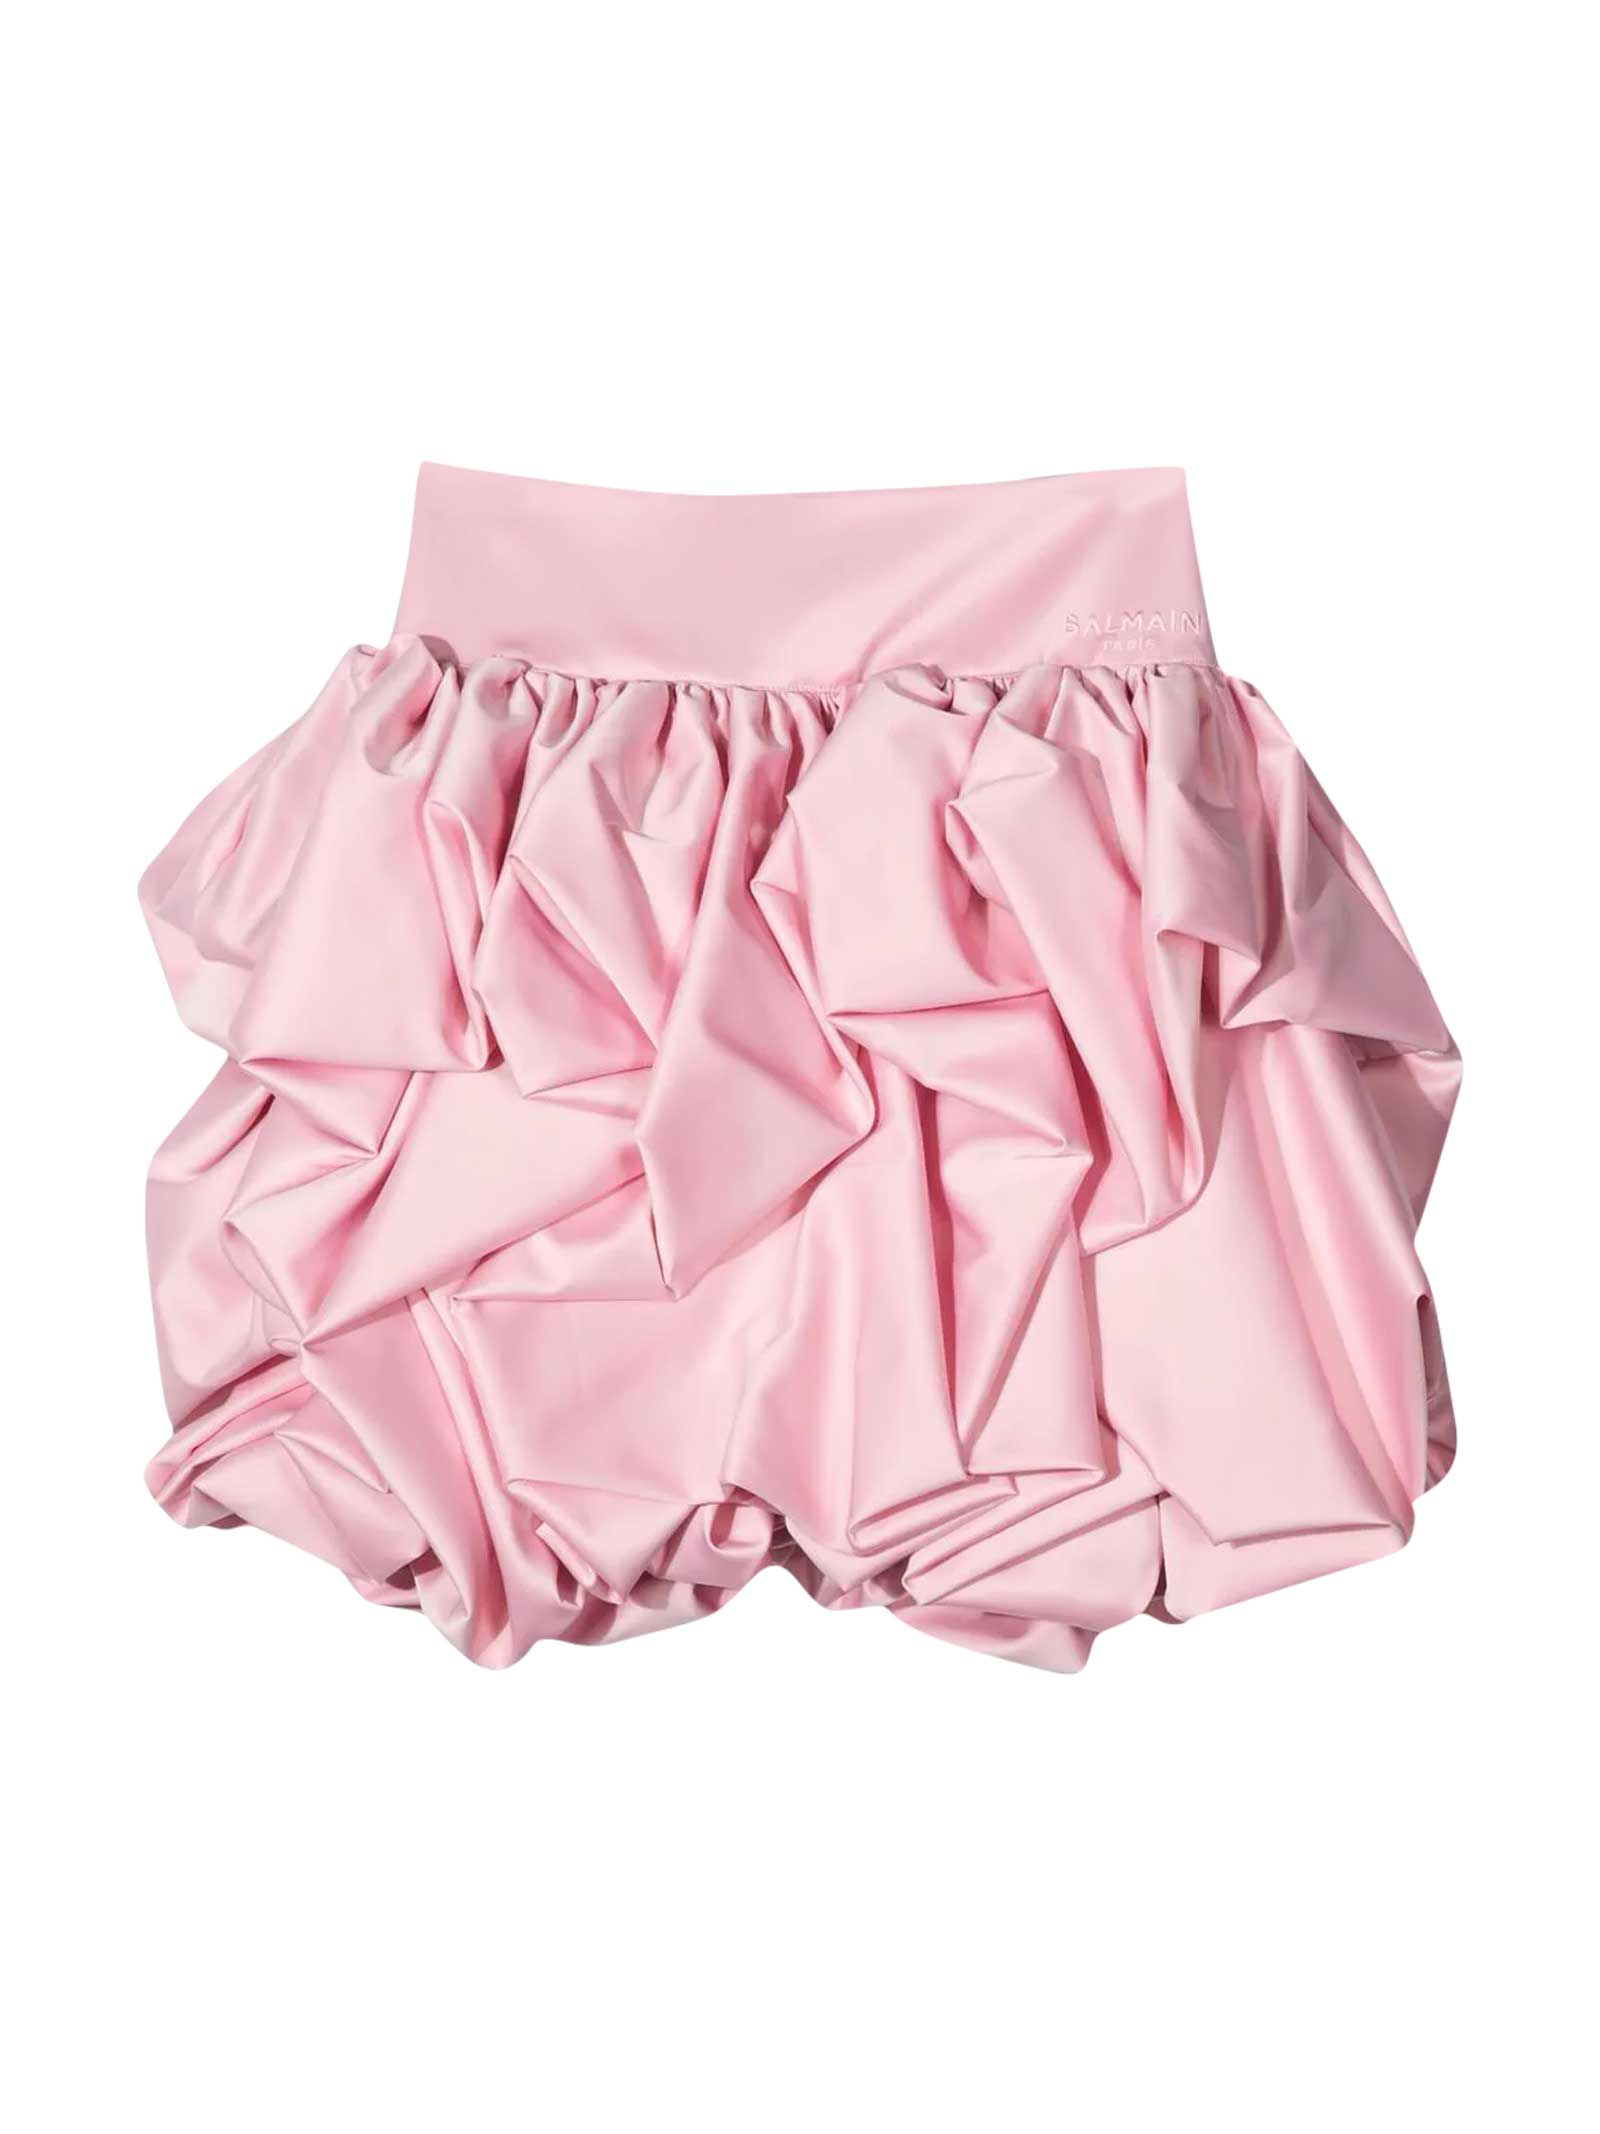 Balmain Teen Pink Skirt